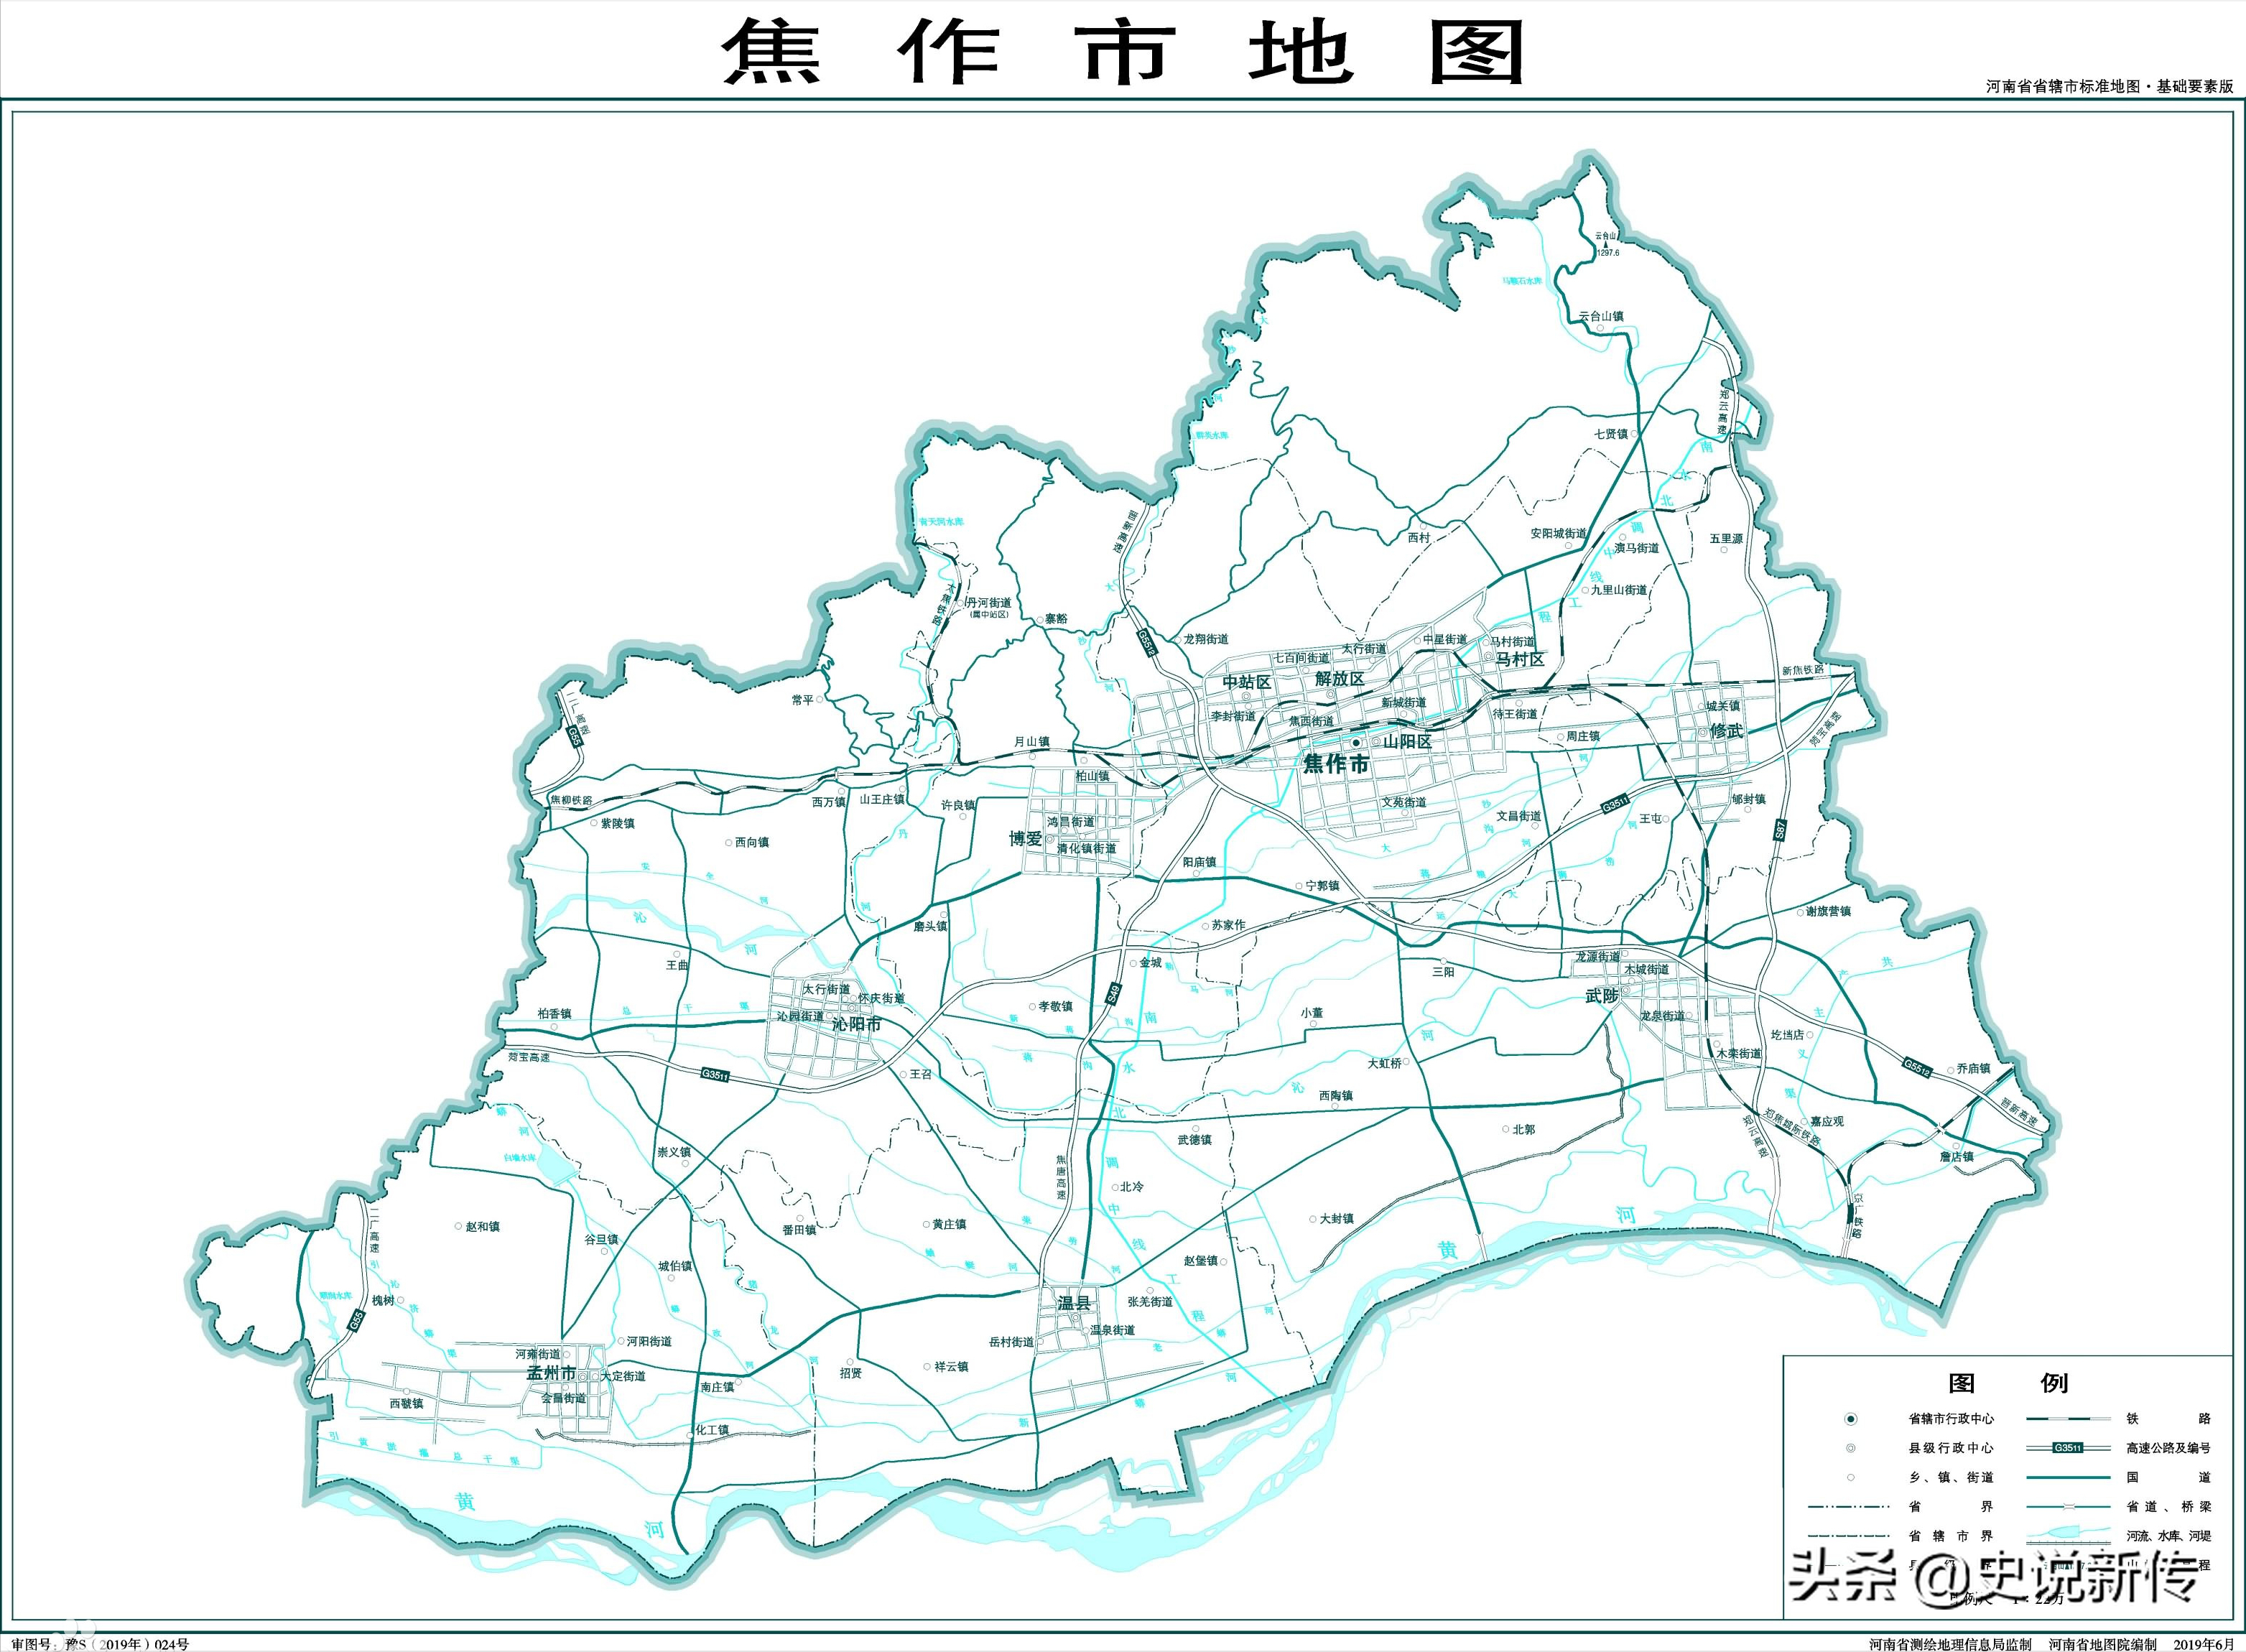 河南省沁阳市河南省沁阳市地图-(千年古县 沁阳城市地位的变迁)